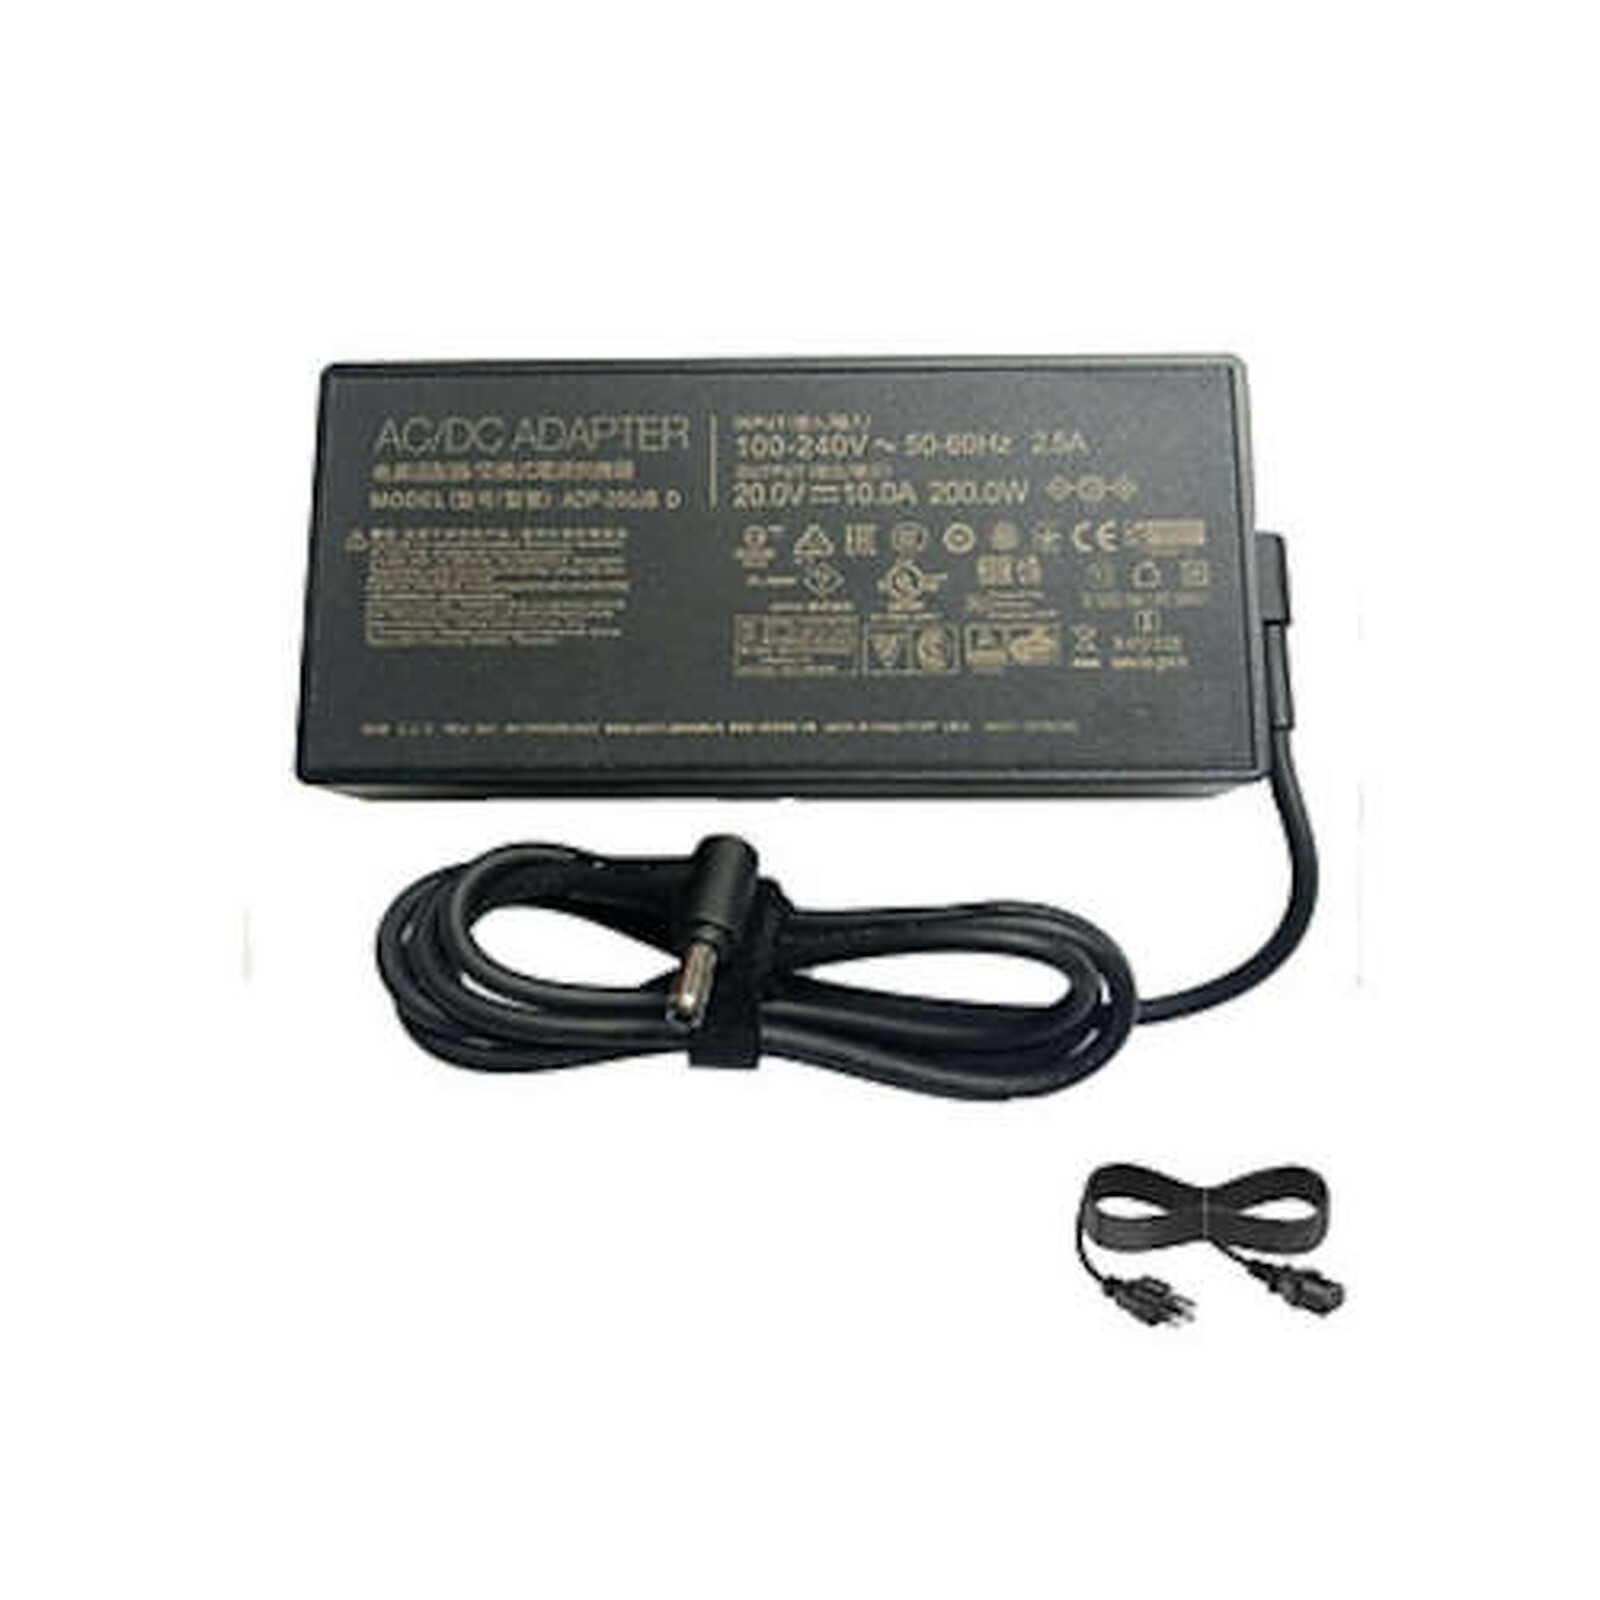 MSI 957-15851P-102 - Chargeur PC portable - Garantie 3 ans LDLC